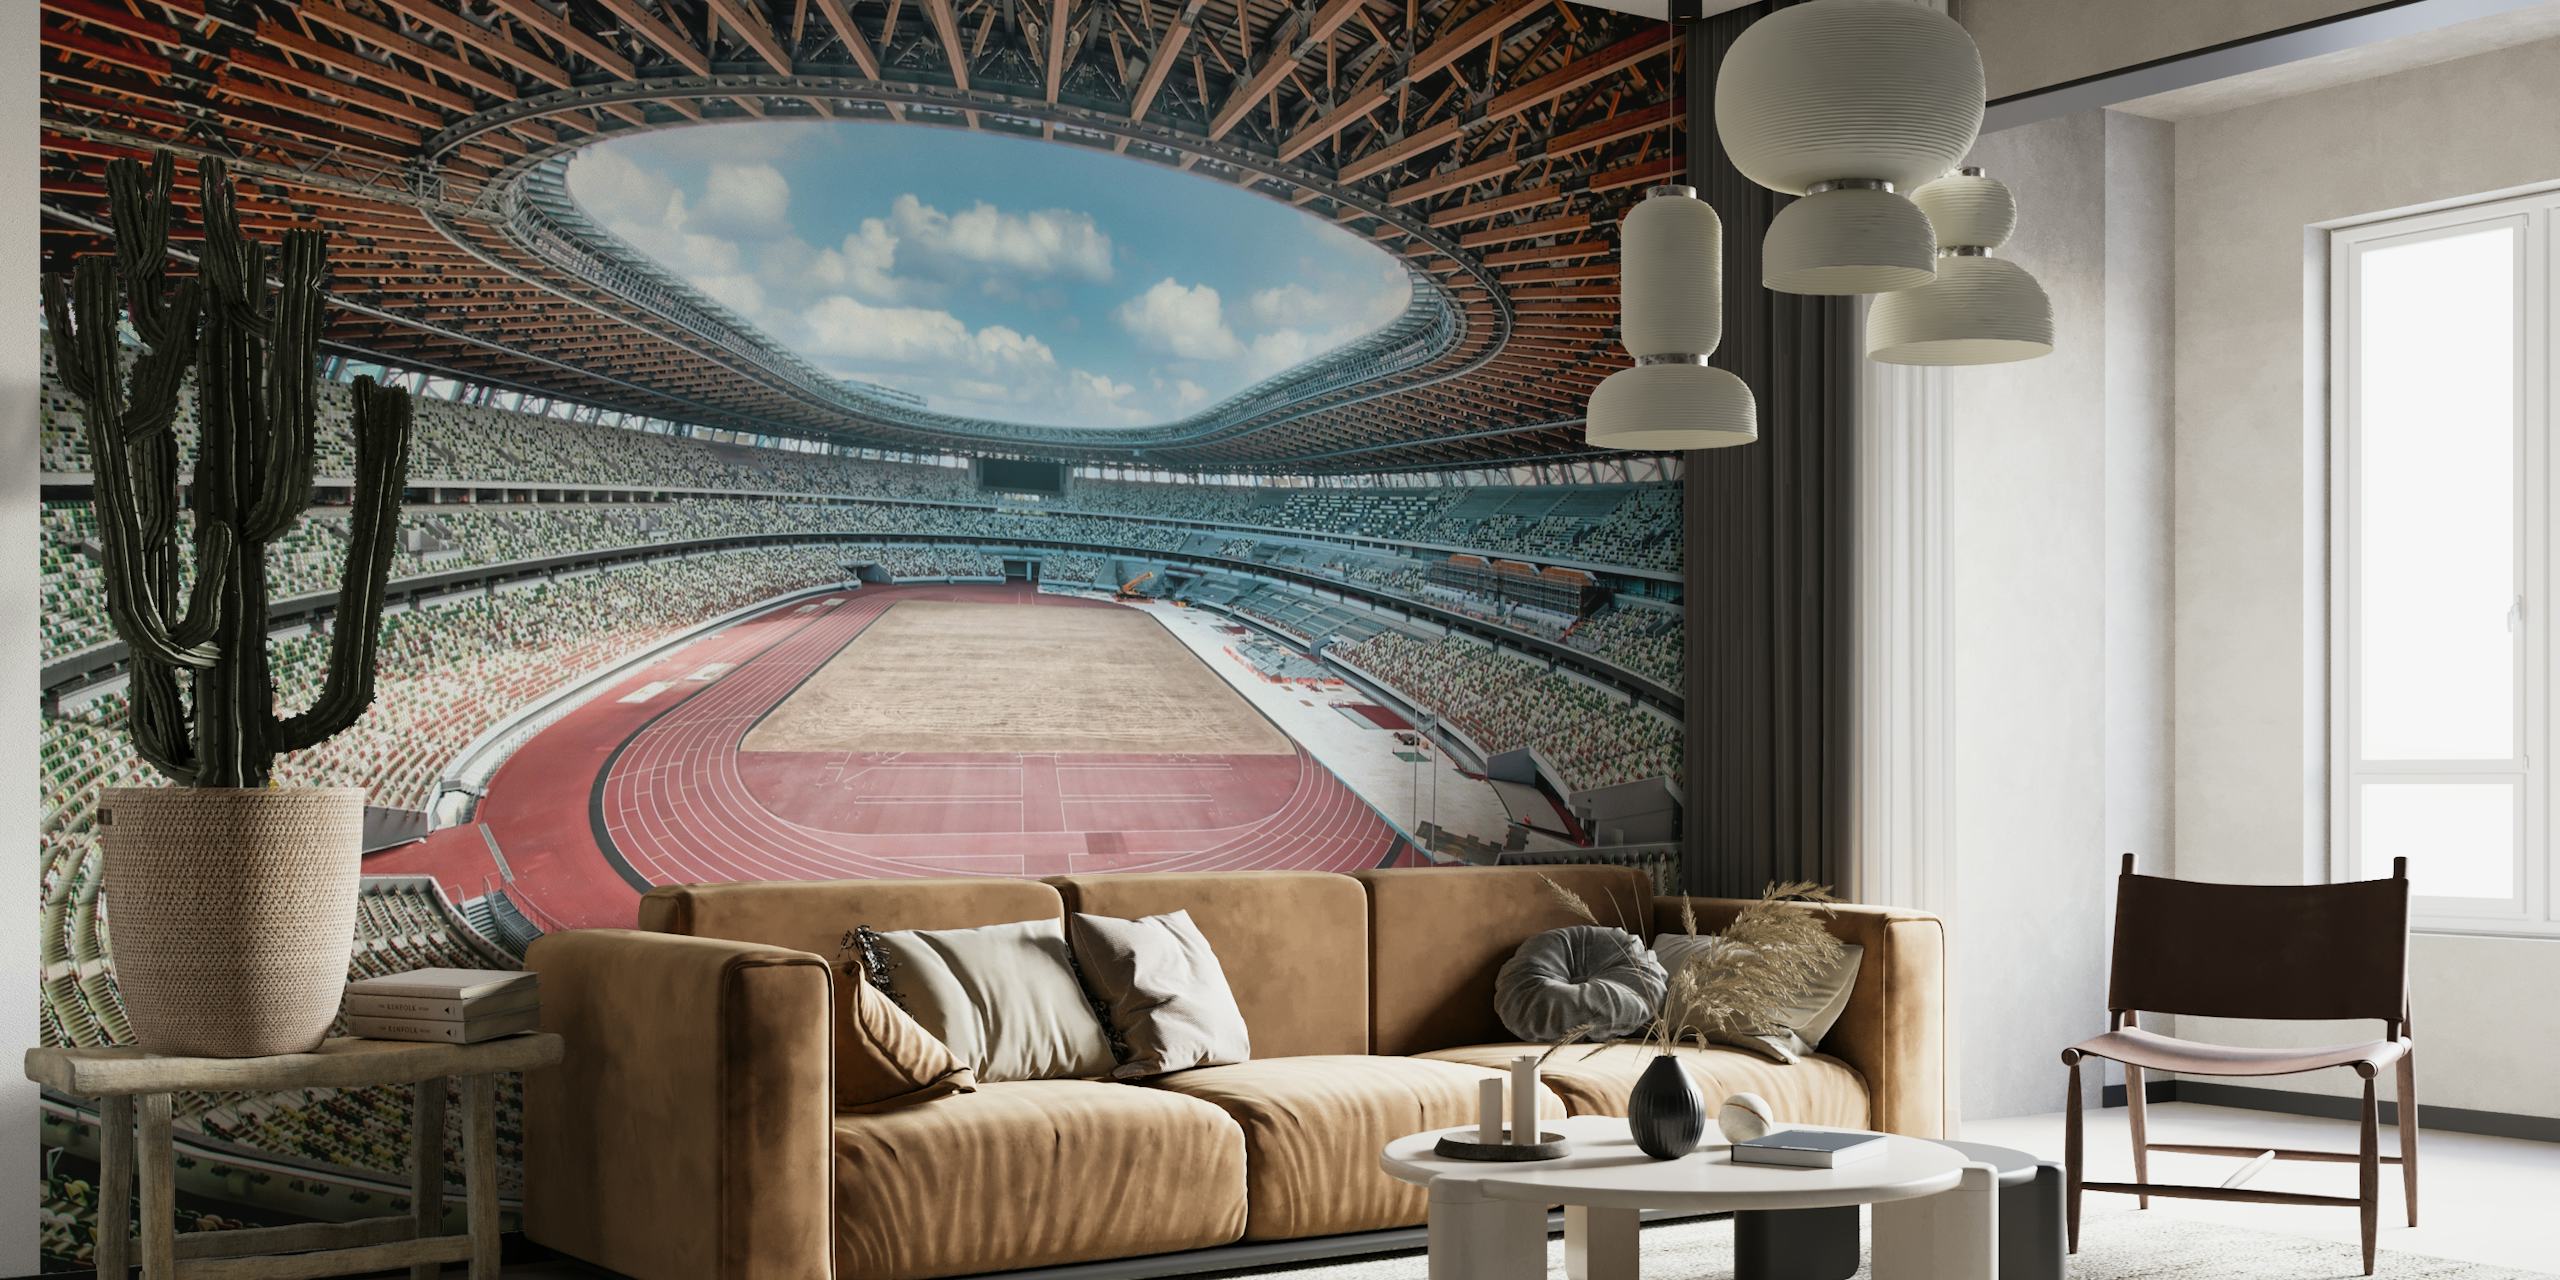 Tokyo 2020 Olympic Stadium behang